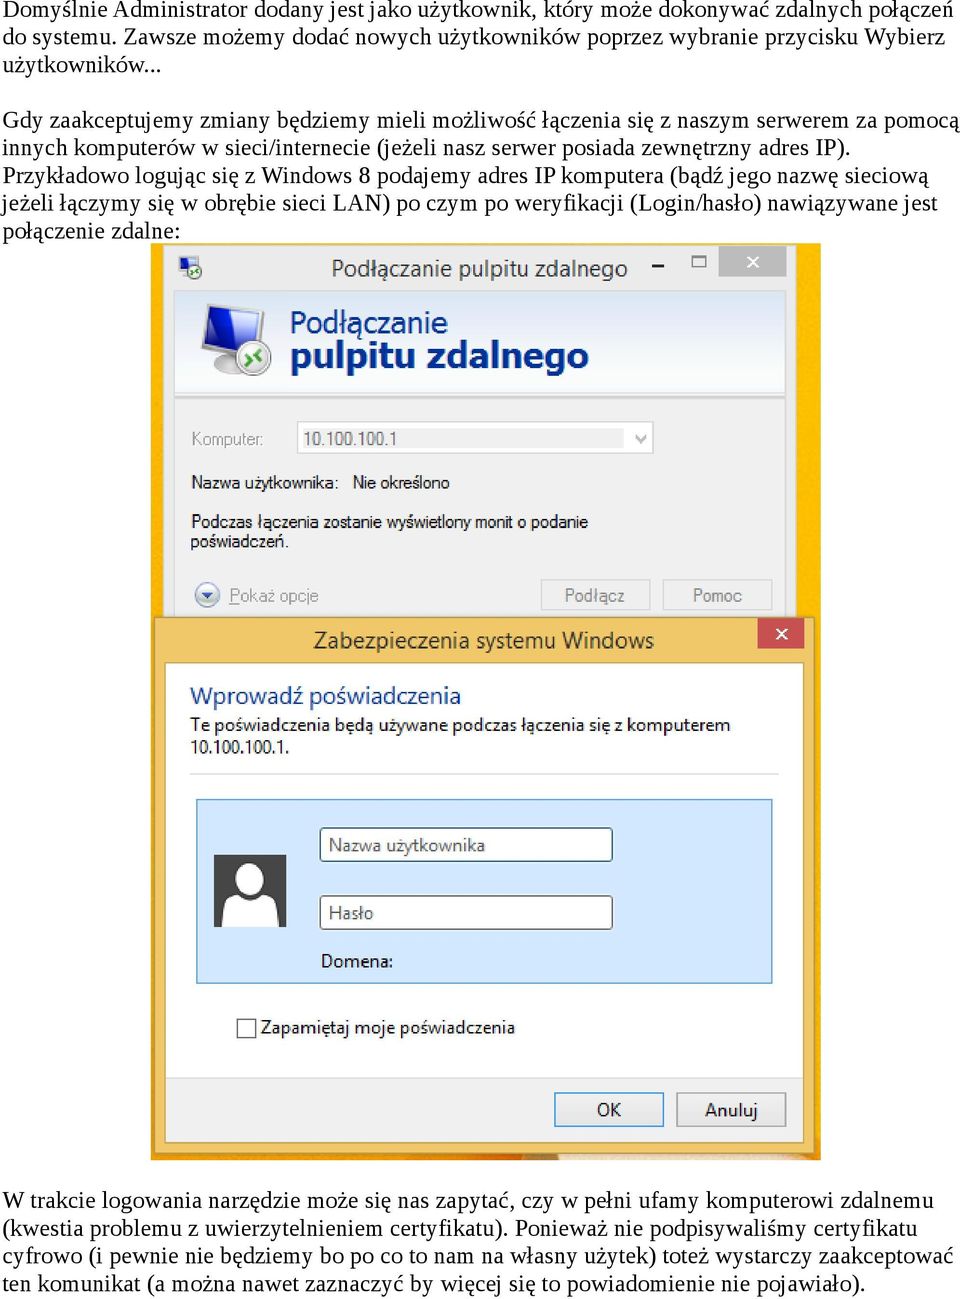 Przykładowo logując się z Windows 8 podajemy adres IP komputera (bądź jego nazwę sieciową jeżeli łączymy się w obrębie sieci LAN) po czym po weryfikacji (Login/hasło) nawiązywane jest połączenie